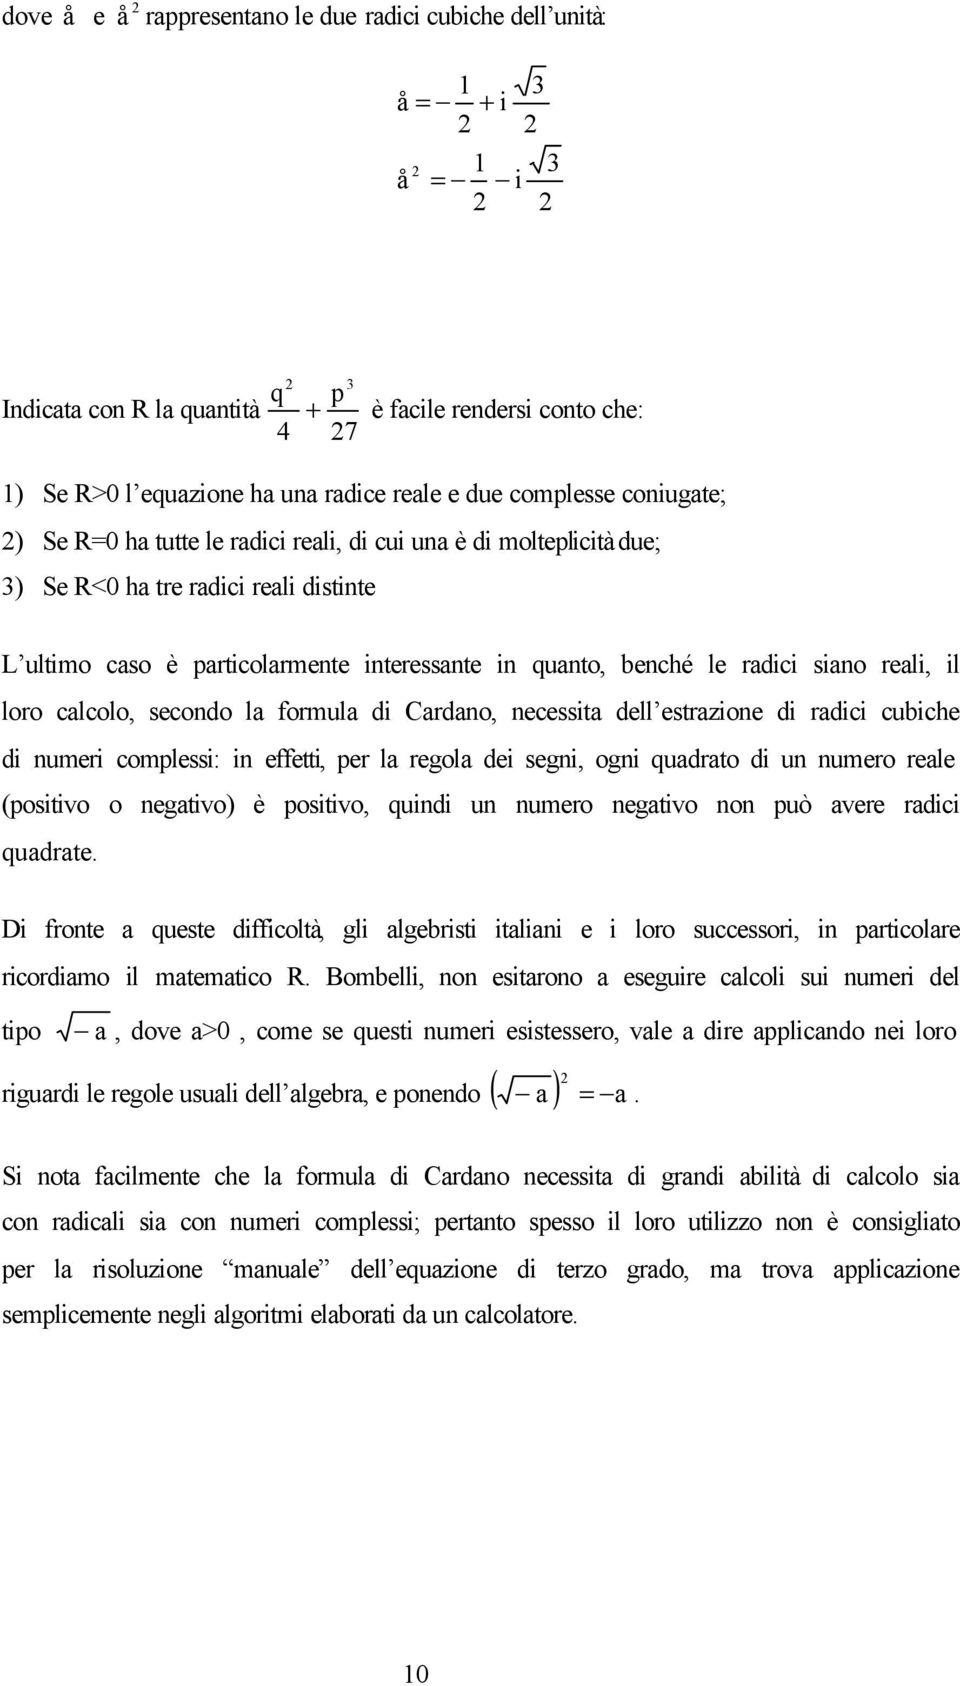 reali, il loro calcolo, secondo la formula di Cardano, necessita dell estrazione di radici cubiche di numeri complessi: in effetti, per la regola dei segni, ogni quadrato di un numero reale (positivo